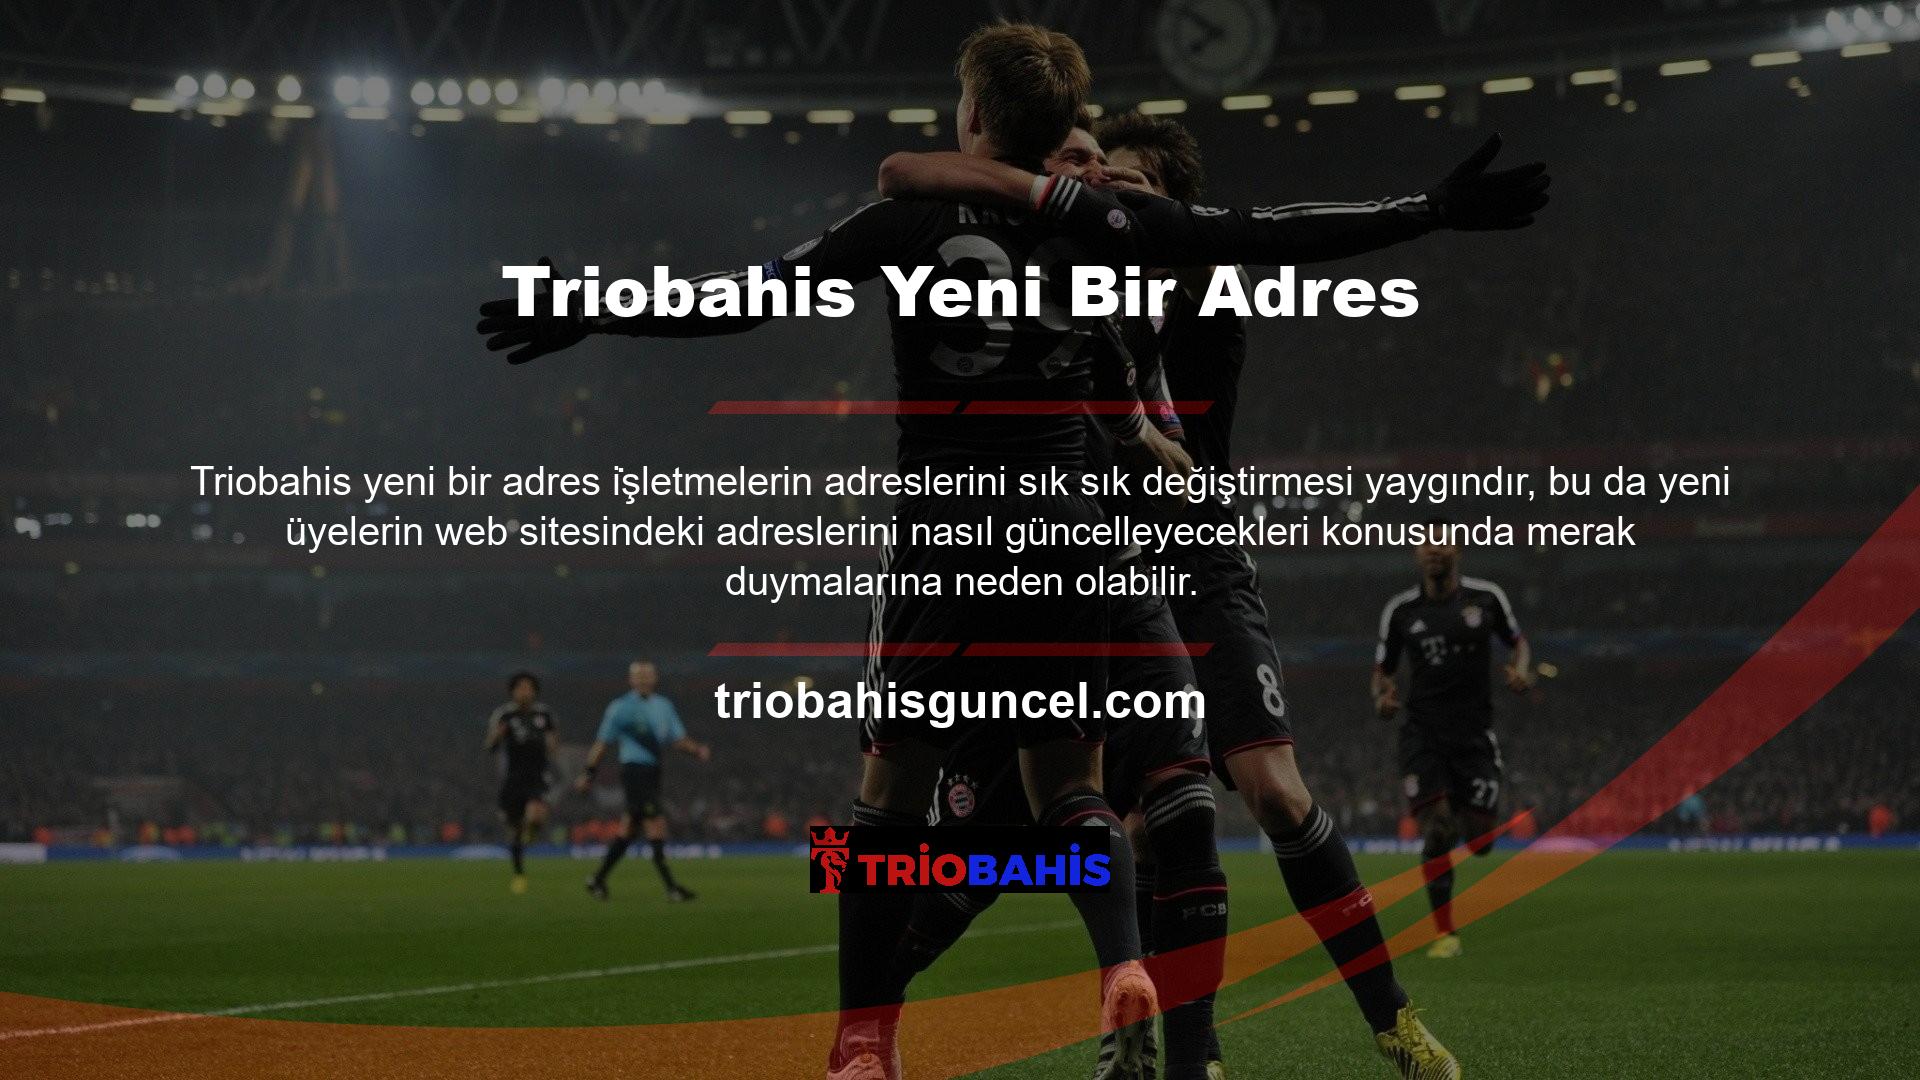 Triobahis oyun markasına yeni üye olacak veya ziyaretçilerin öncelikle sitenin resmi sosyal medya sayfalarını incelemeleri tavsiye edilmektedir